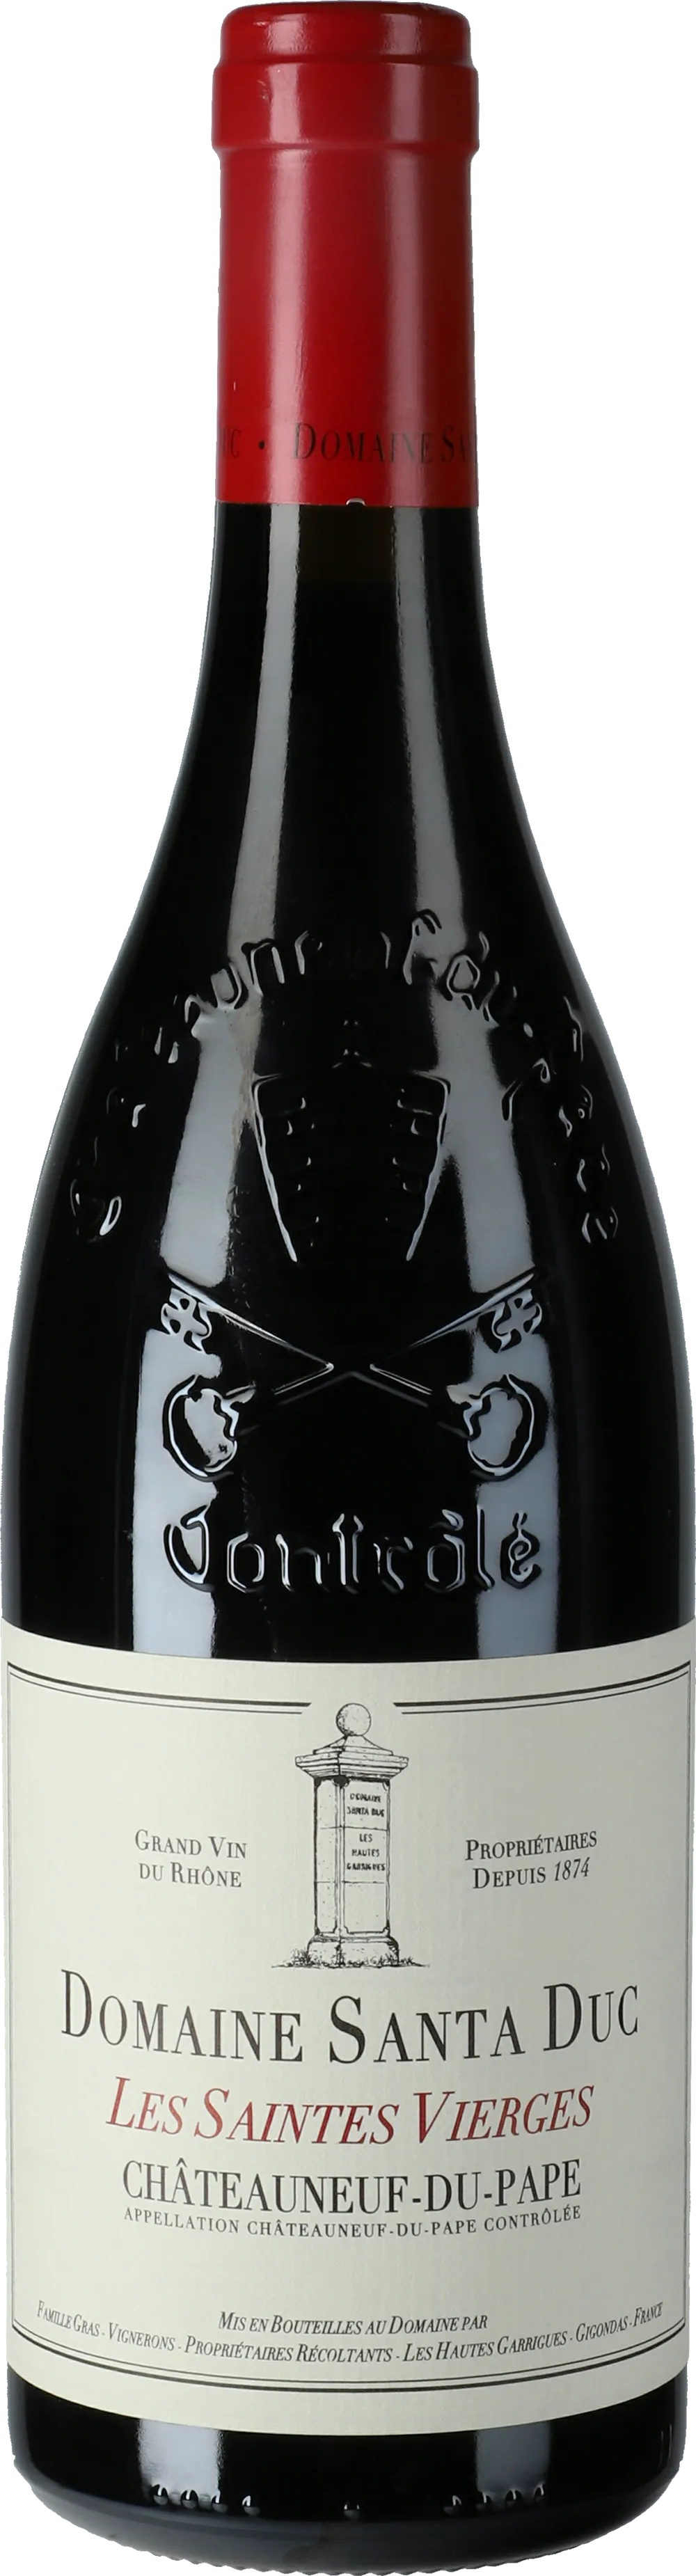 Bottle of Domaine Santa Duc Châteauneuf du Pape 'Les Saintes Vierges'with label visible